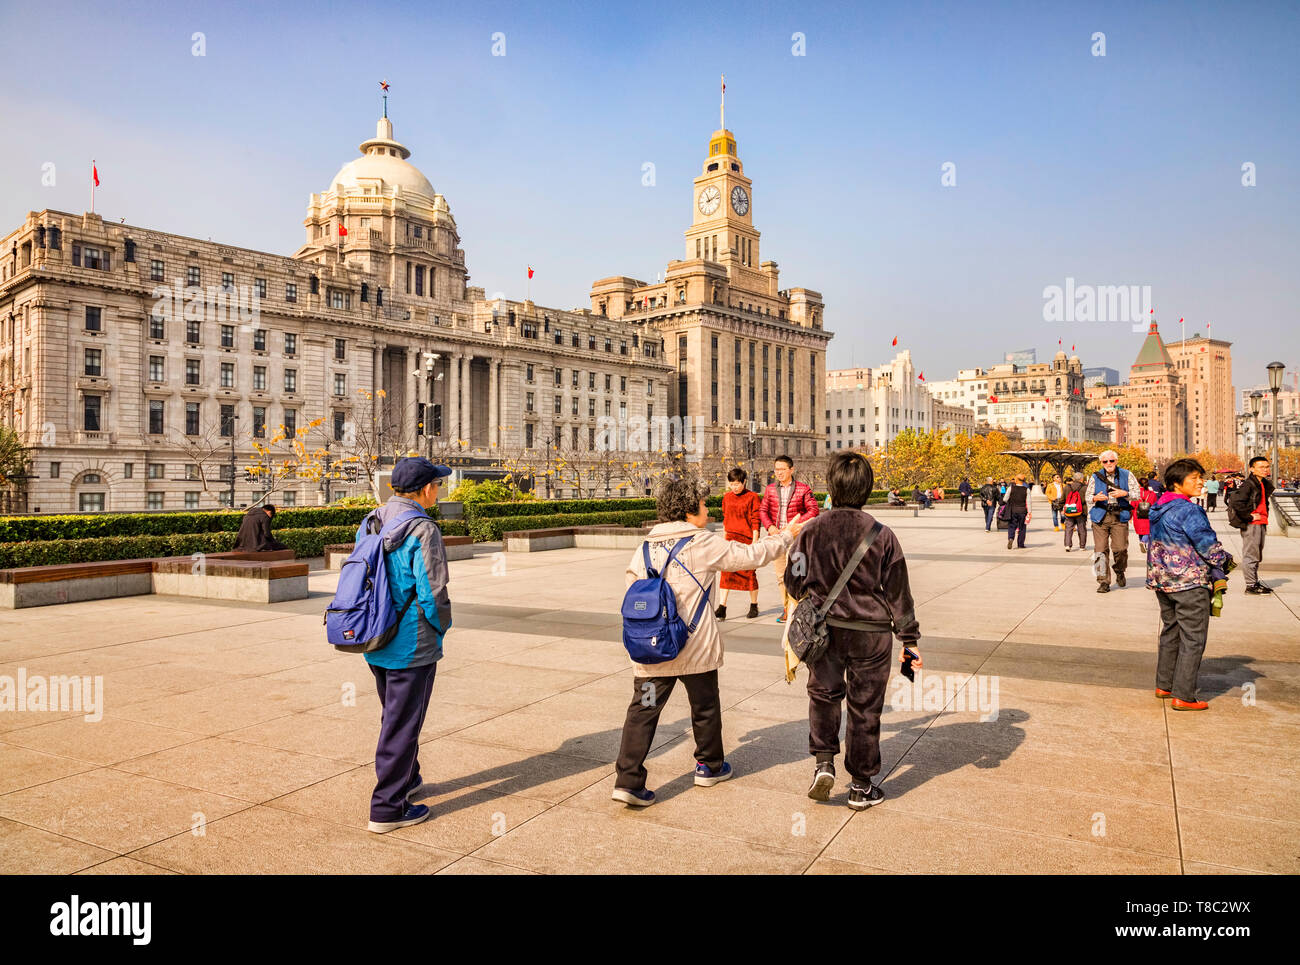 29 Novembre 2018 : Shanghai, Chine - Les visiteurs de marcher sur le Bund, à côté de la rivière Huangpu, à Shanghai. Banque D'Images